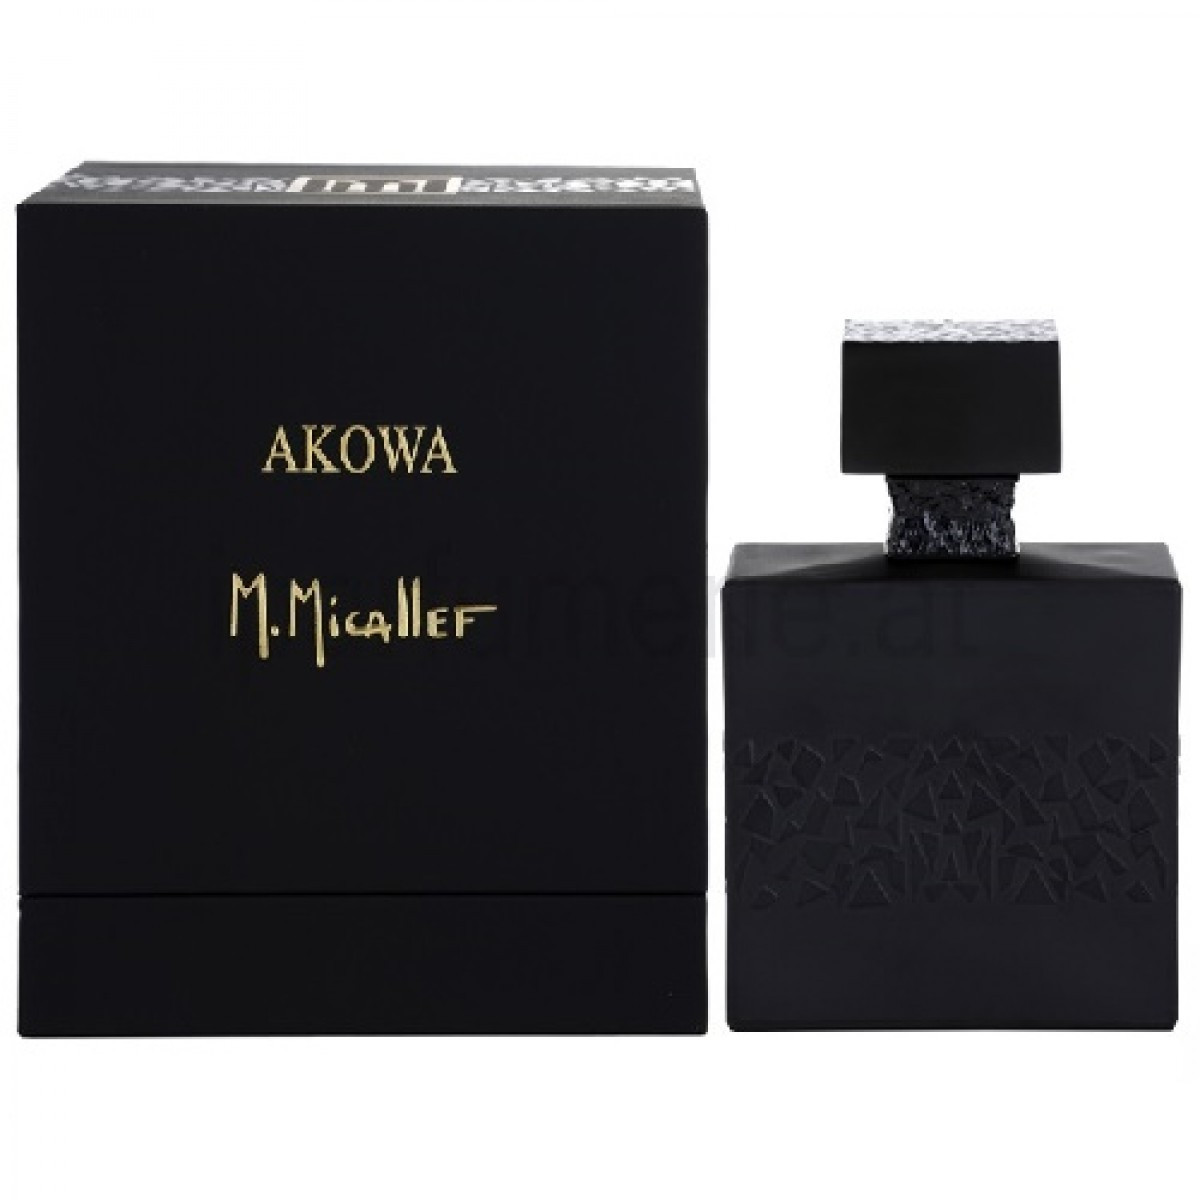 M. Micallef Akowa 100ml чоловікська оригінальна парфумерія